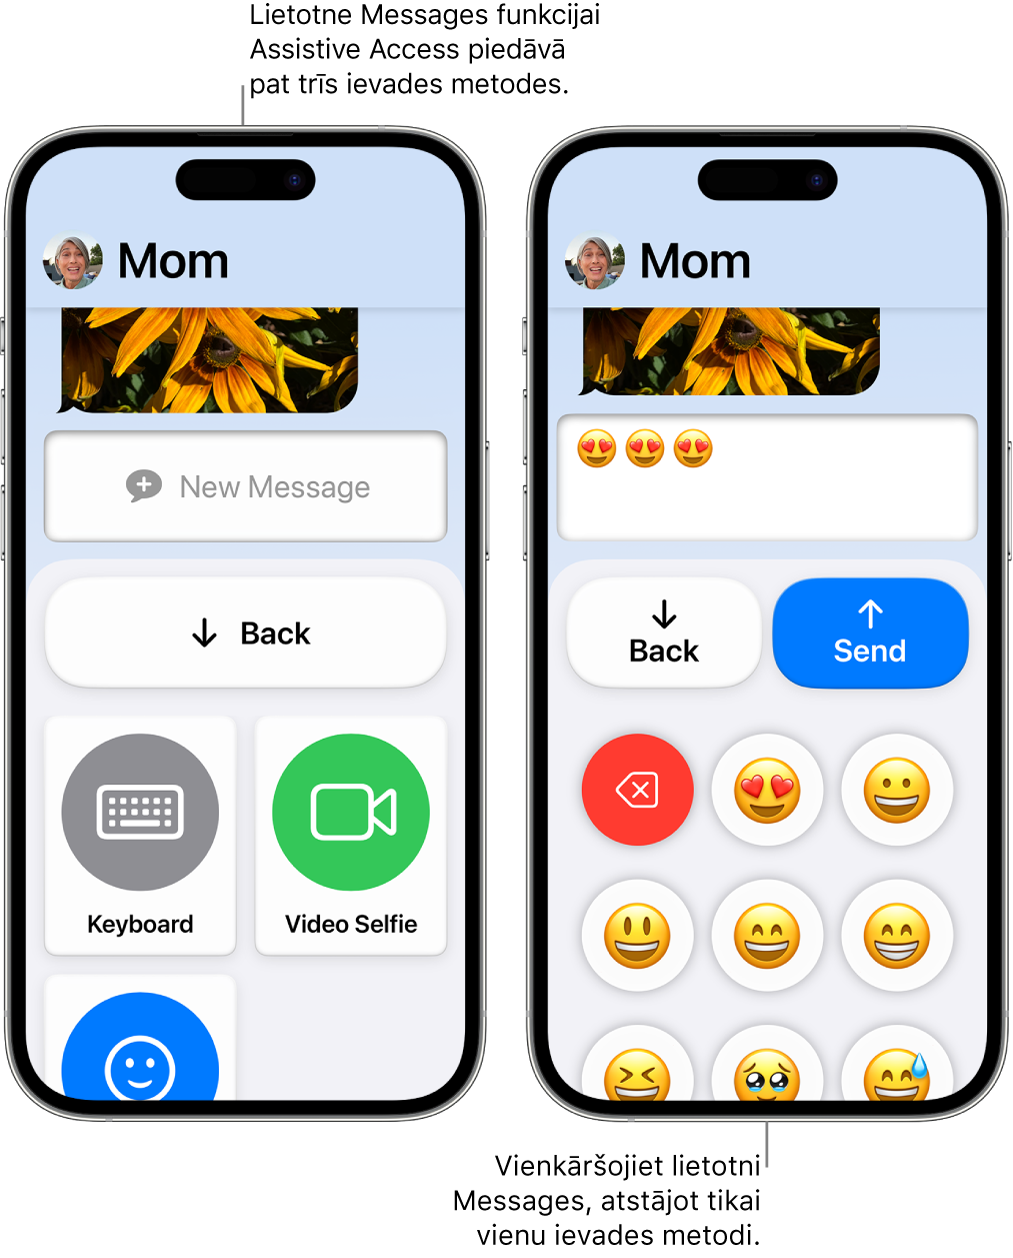 Divi iPhone tālruņi ar aktivizētu funkciju Assistive Access. Viens iPhone tālrunis, kurā redzama lietotne Messages ar ievades metodēm, ko lietotājs var izvēlēties, piemēram, Keyboard vai Video Selfie. Otrā tālrunī redzams ziņojums, kas tiek sūtīts, izmantojot tastatūru, kurā ir tikai emocijzīmes.